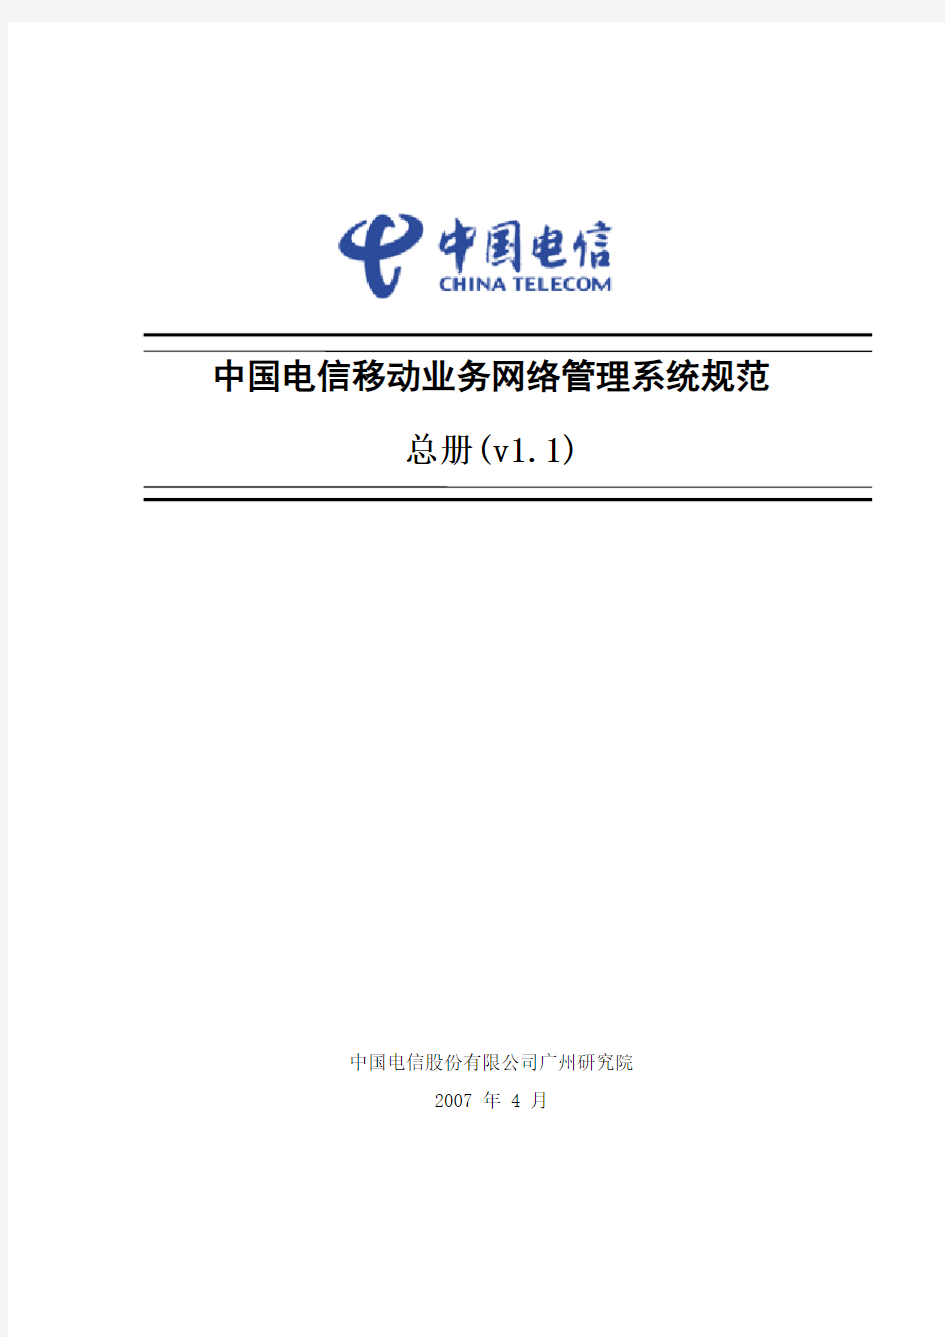 中国电信移动业务网络管理系统规范-总册(V11)